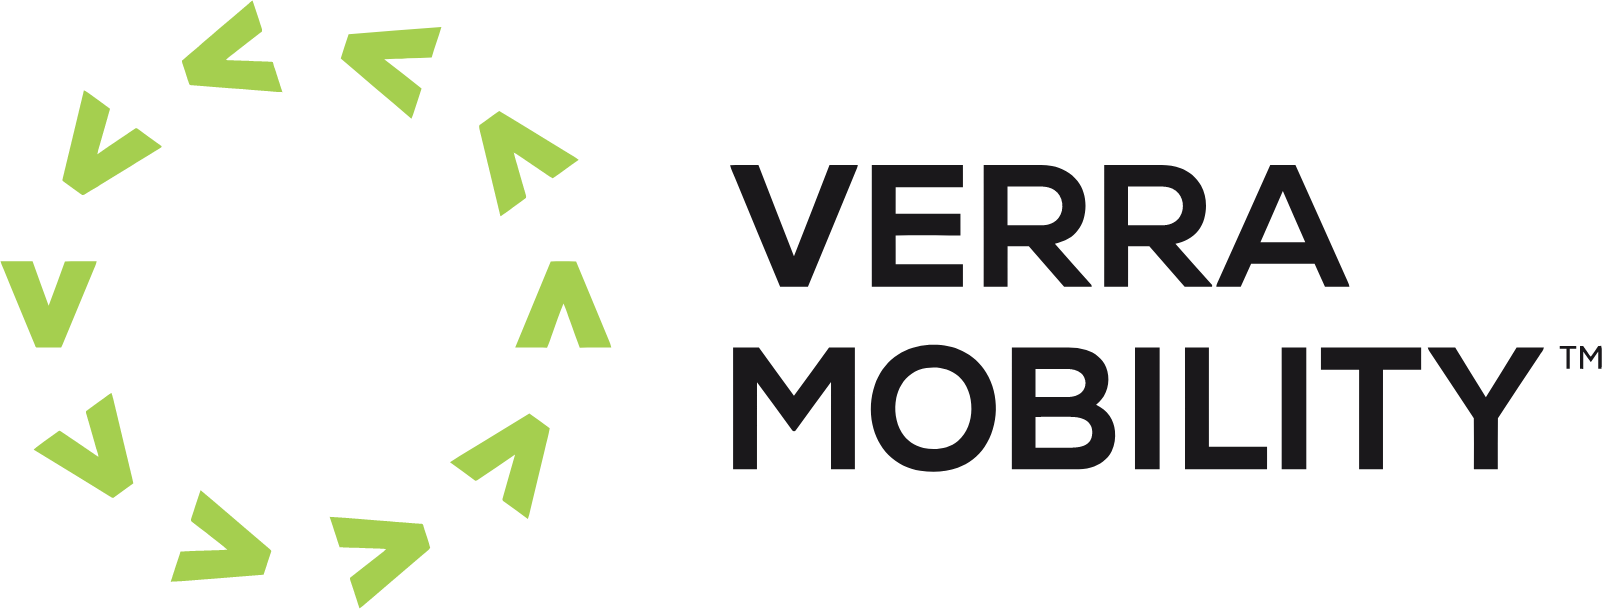 Verra Mobility logo large (transparent PNG)